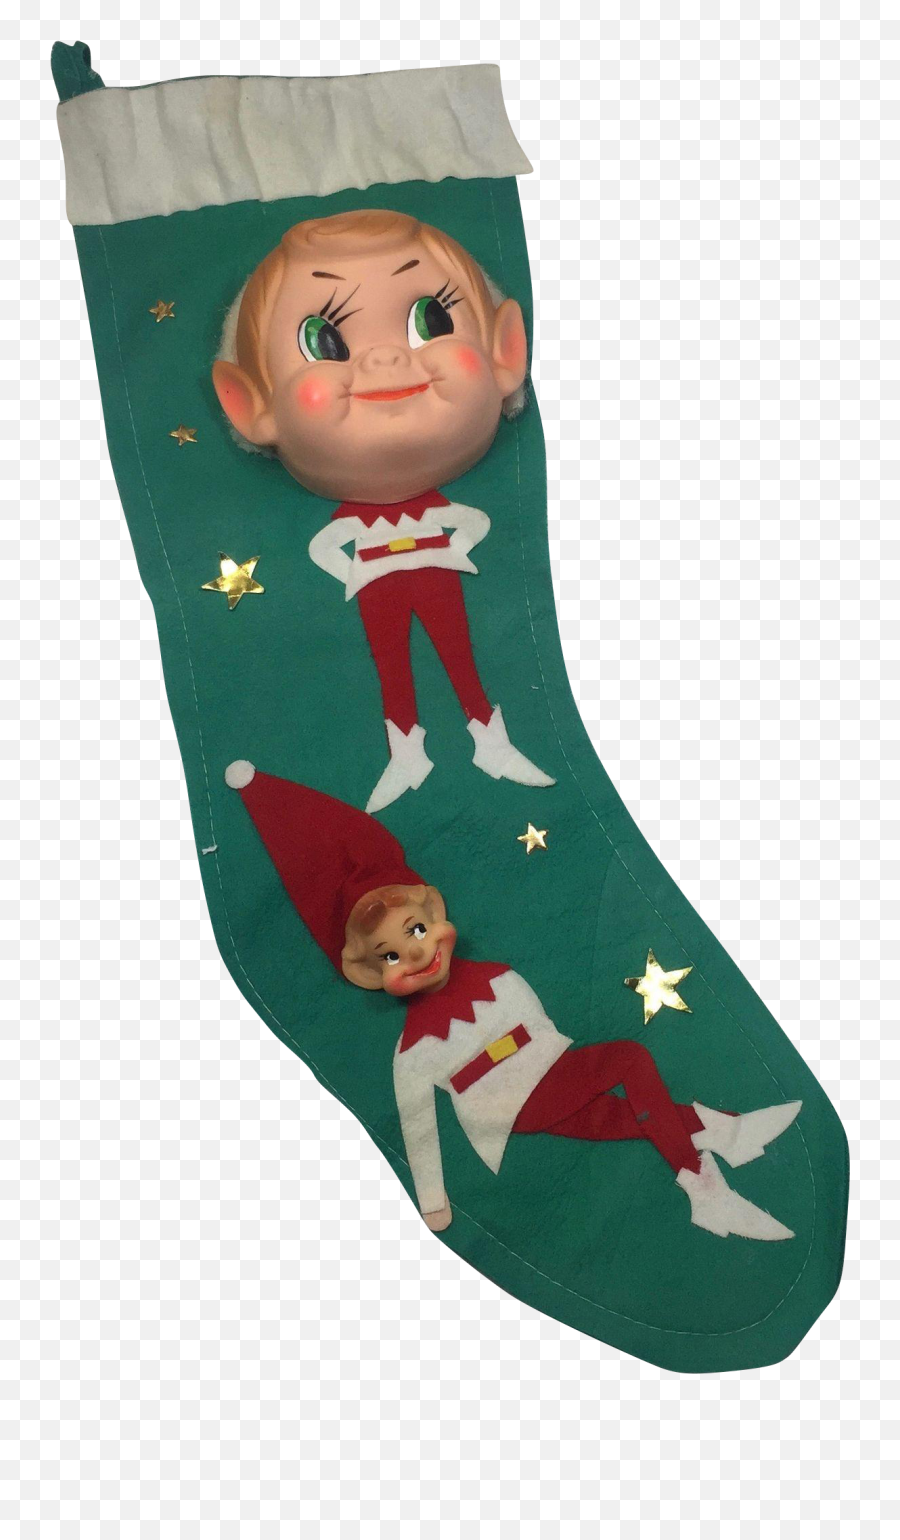 Vintage Christmas Elf Png U0026 Free Vintage Christmas Elfpng - Christmas Elf Emoji,Christmas Stocking Emoji Png